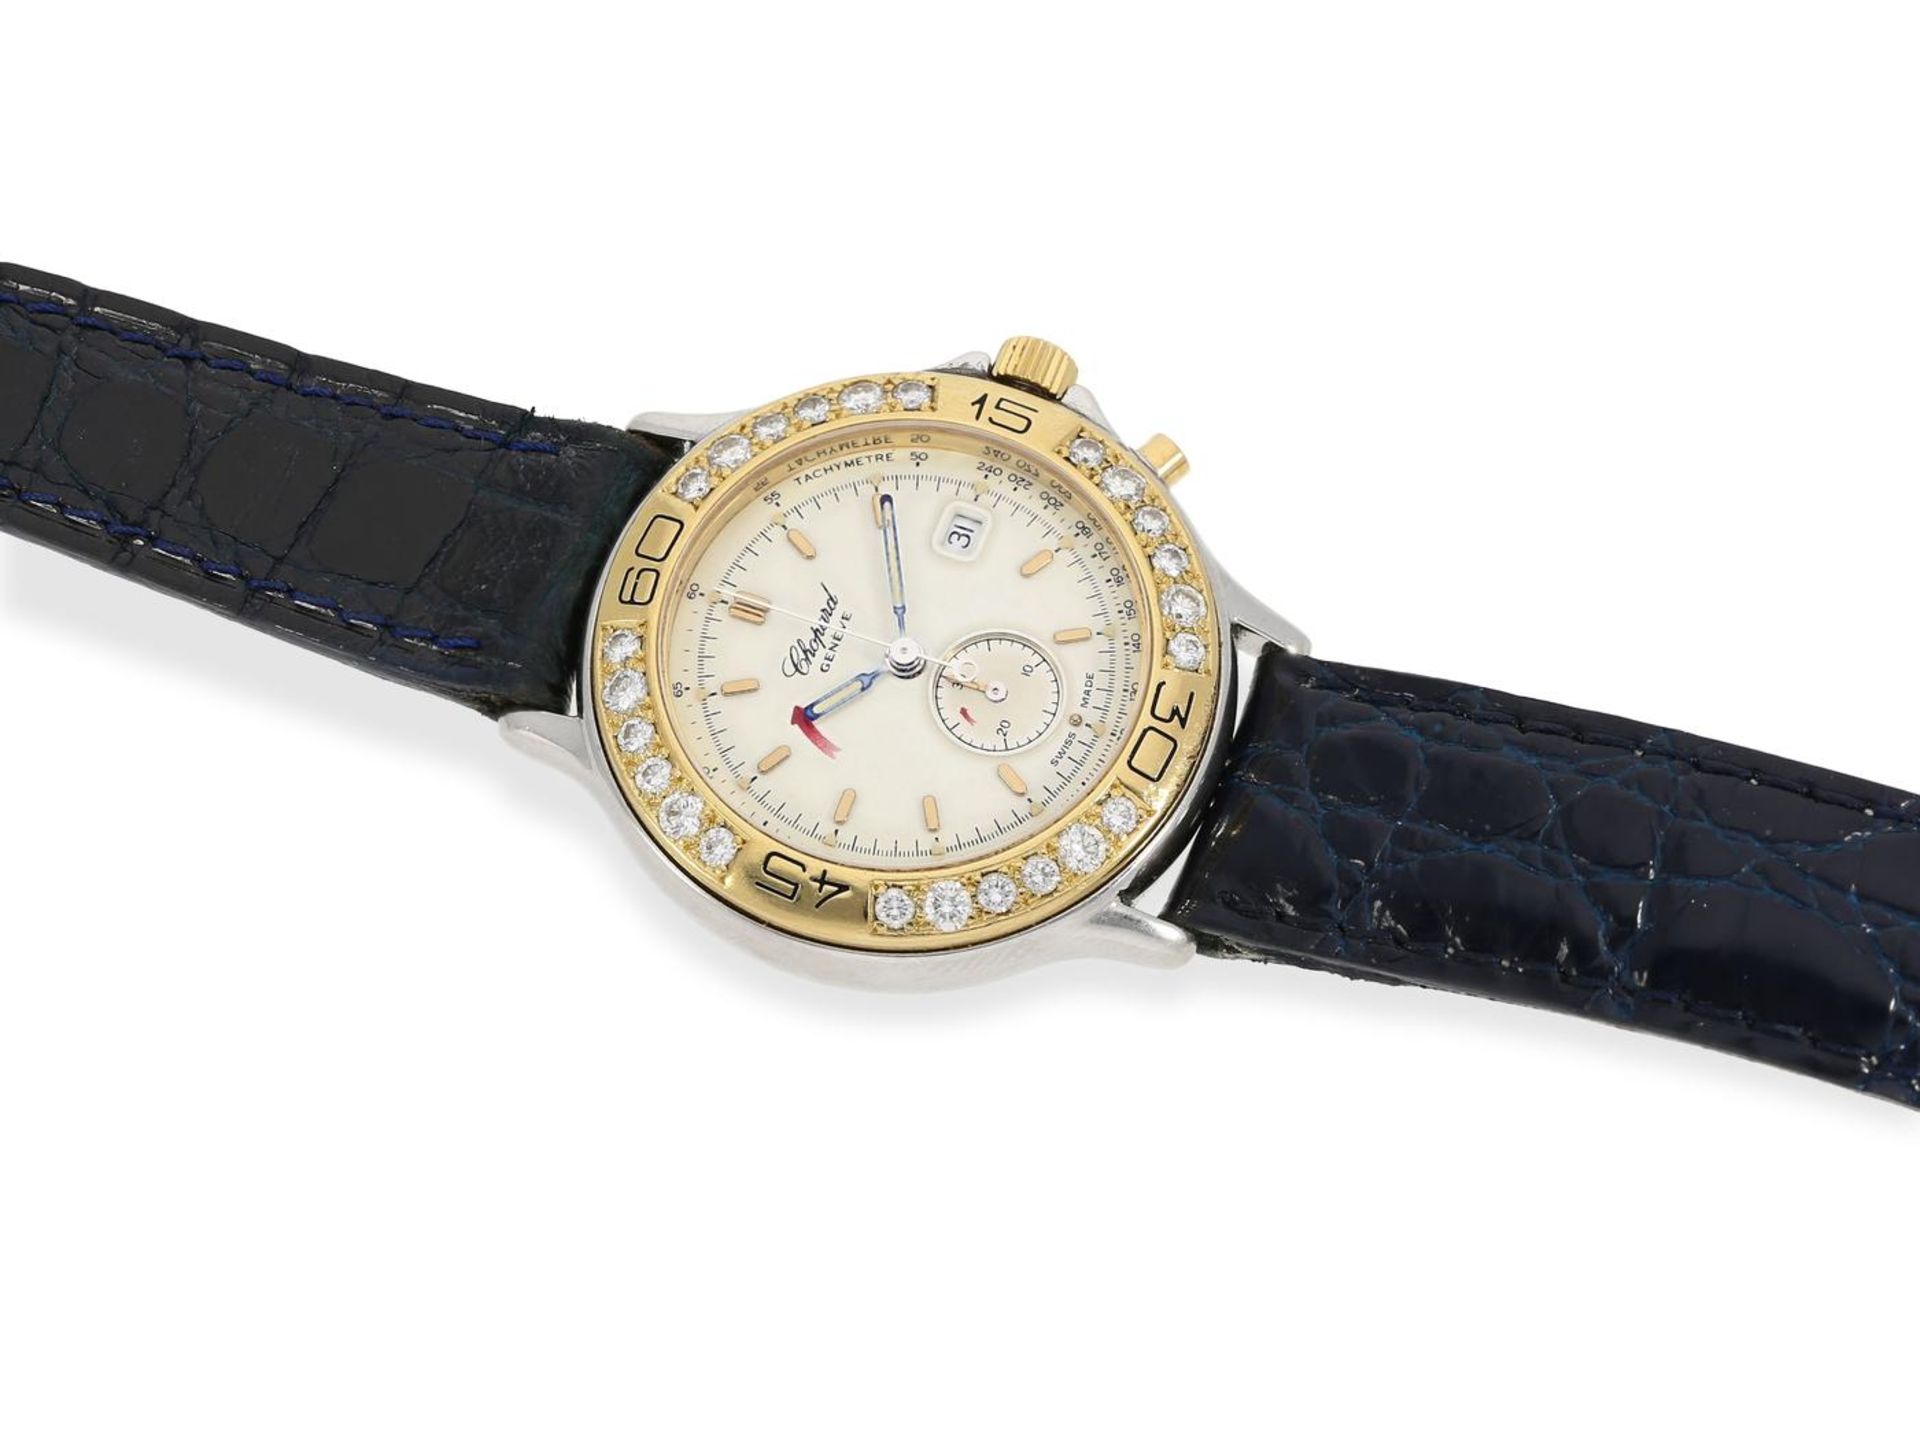 Armbanduhr: Luxuriöser Damen-Chronograph mit Brillantbesatz, Chopard "Mille Miglia" Gold/Edelstahl - Image 3 of 3